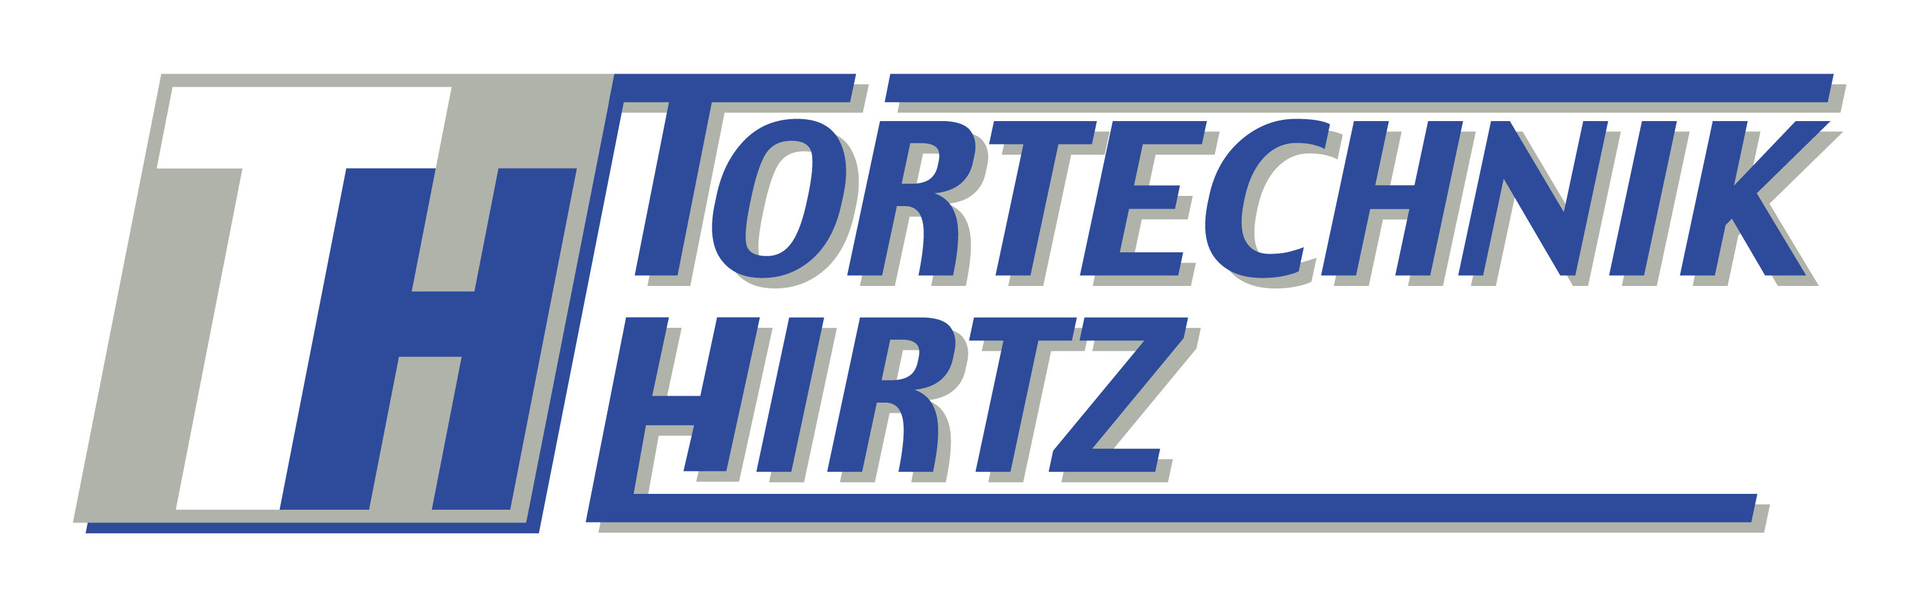 (c) Tortechnik-hirtz.de